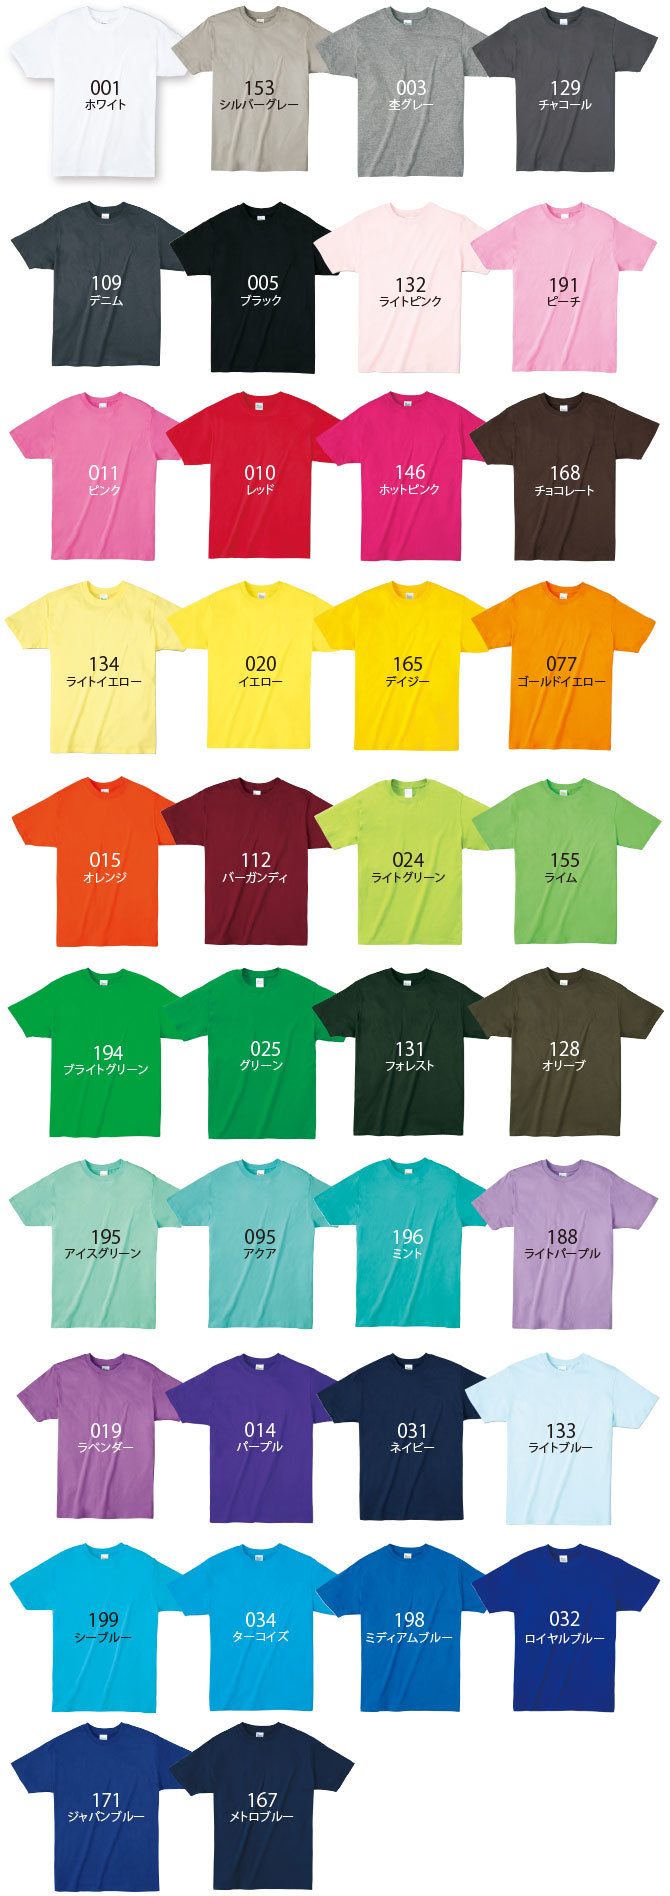 オリジナルTシャツ00833-BBTカラーラインナップ